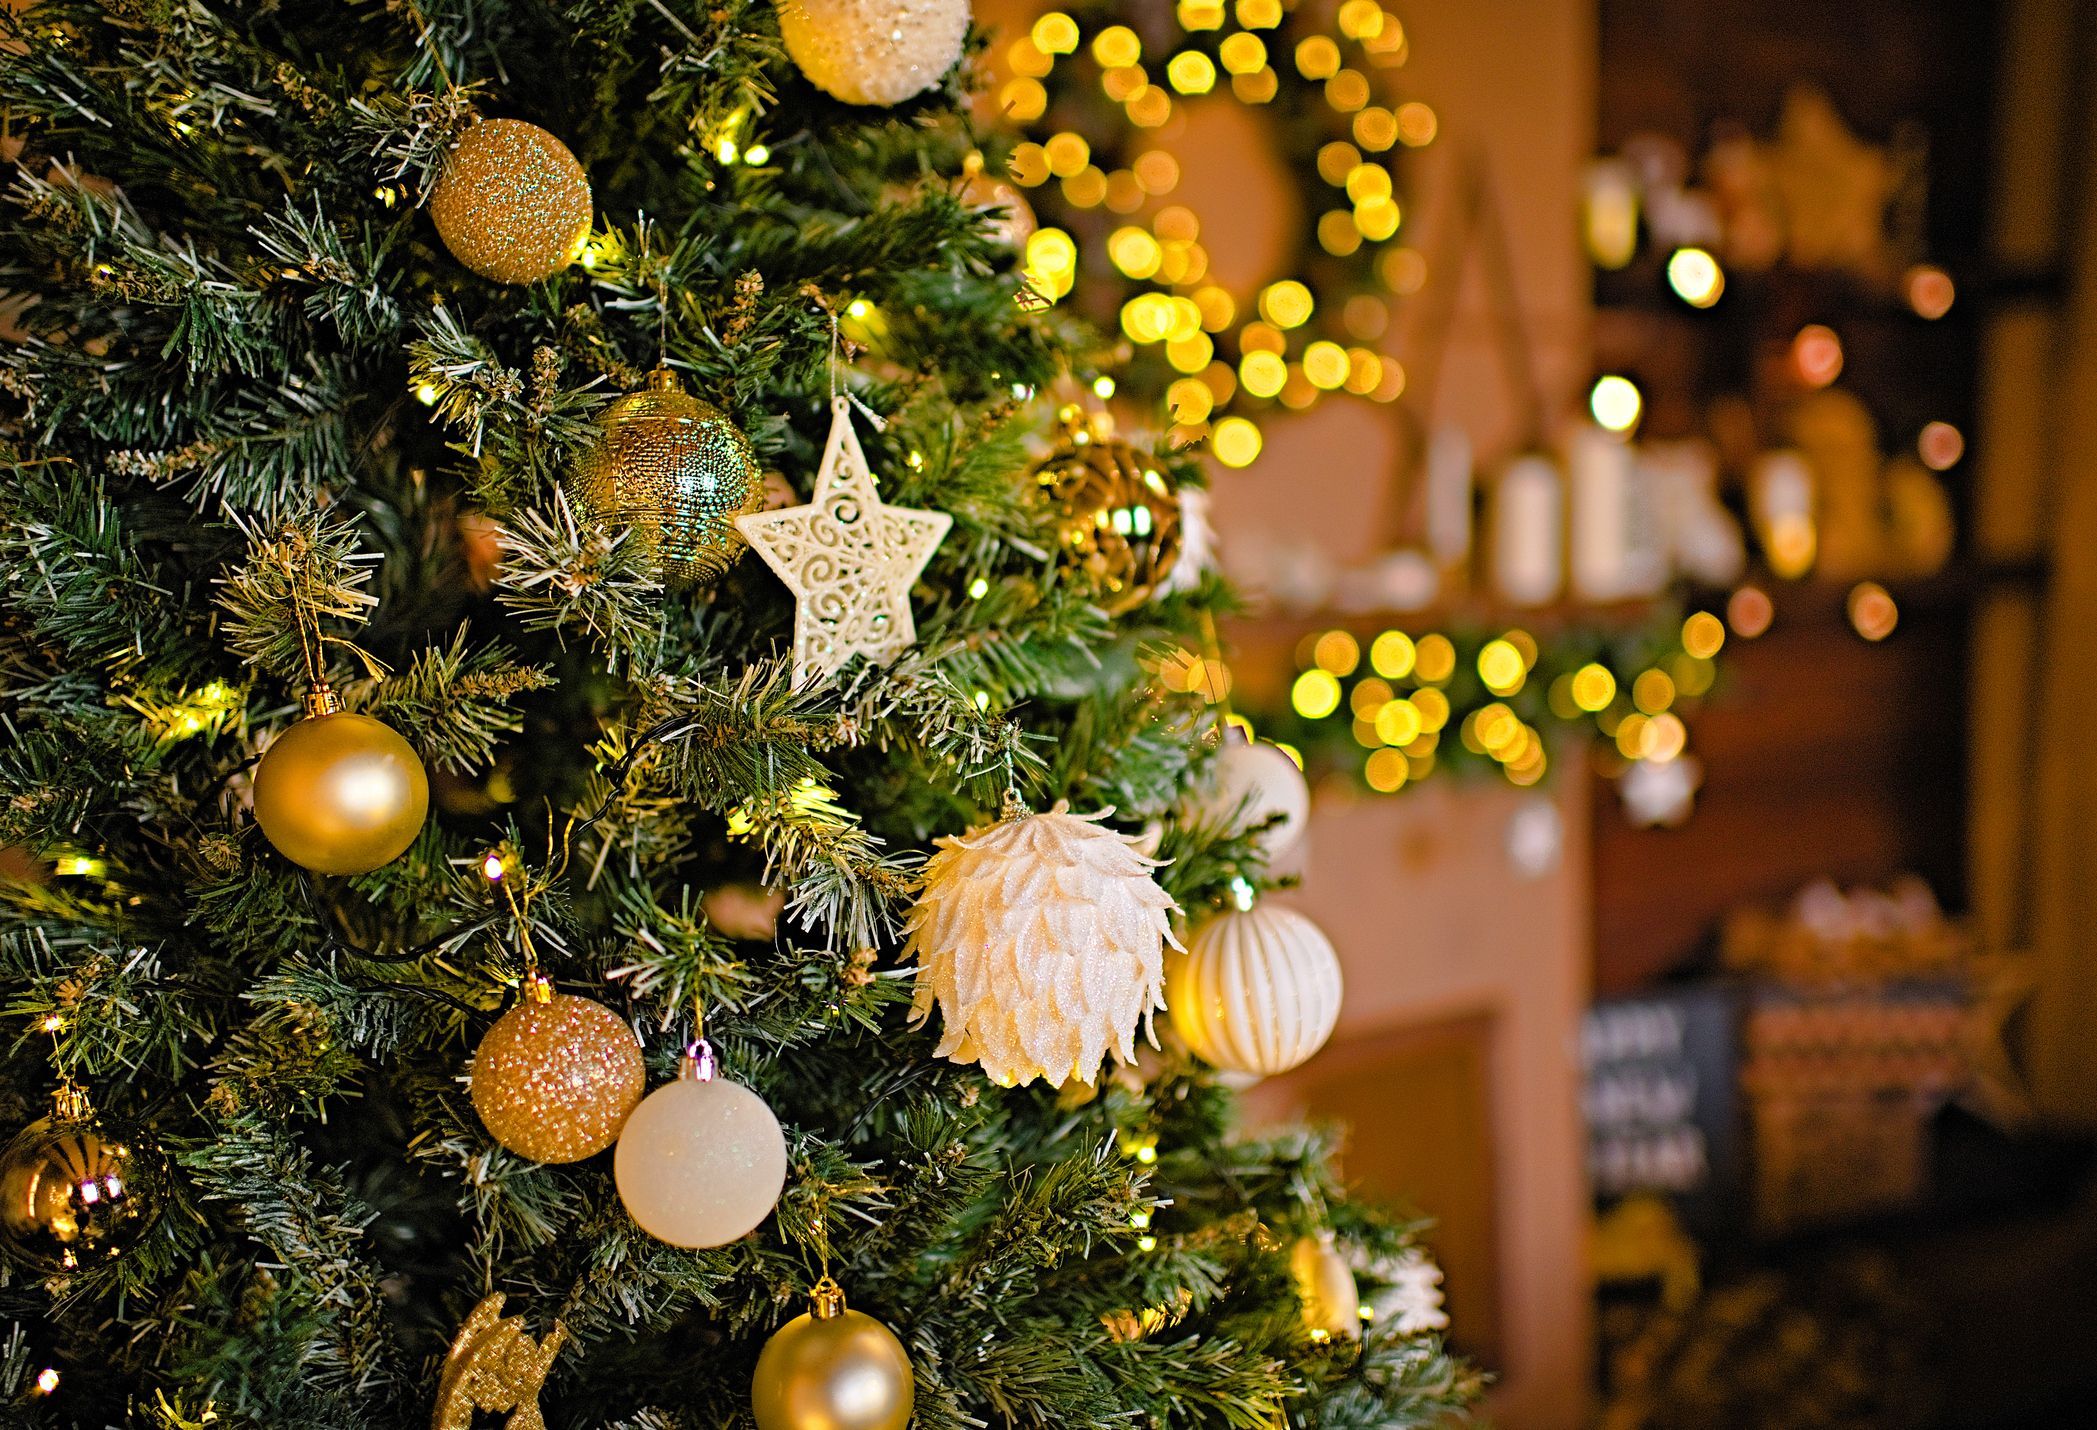 Ozadje božičnih okraskov, božična dekoracija kamina, dekoracija doma za božič, okras kamina б kamina, božične lučke, darilna škatla, sveče, furtree